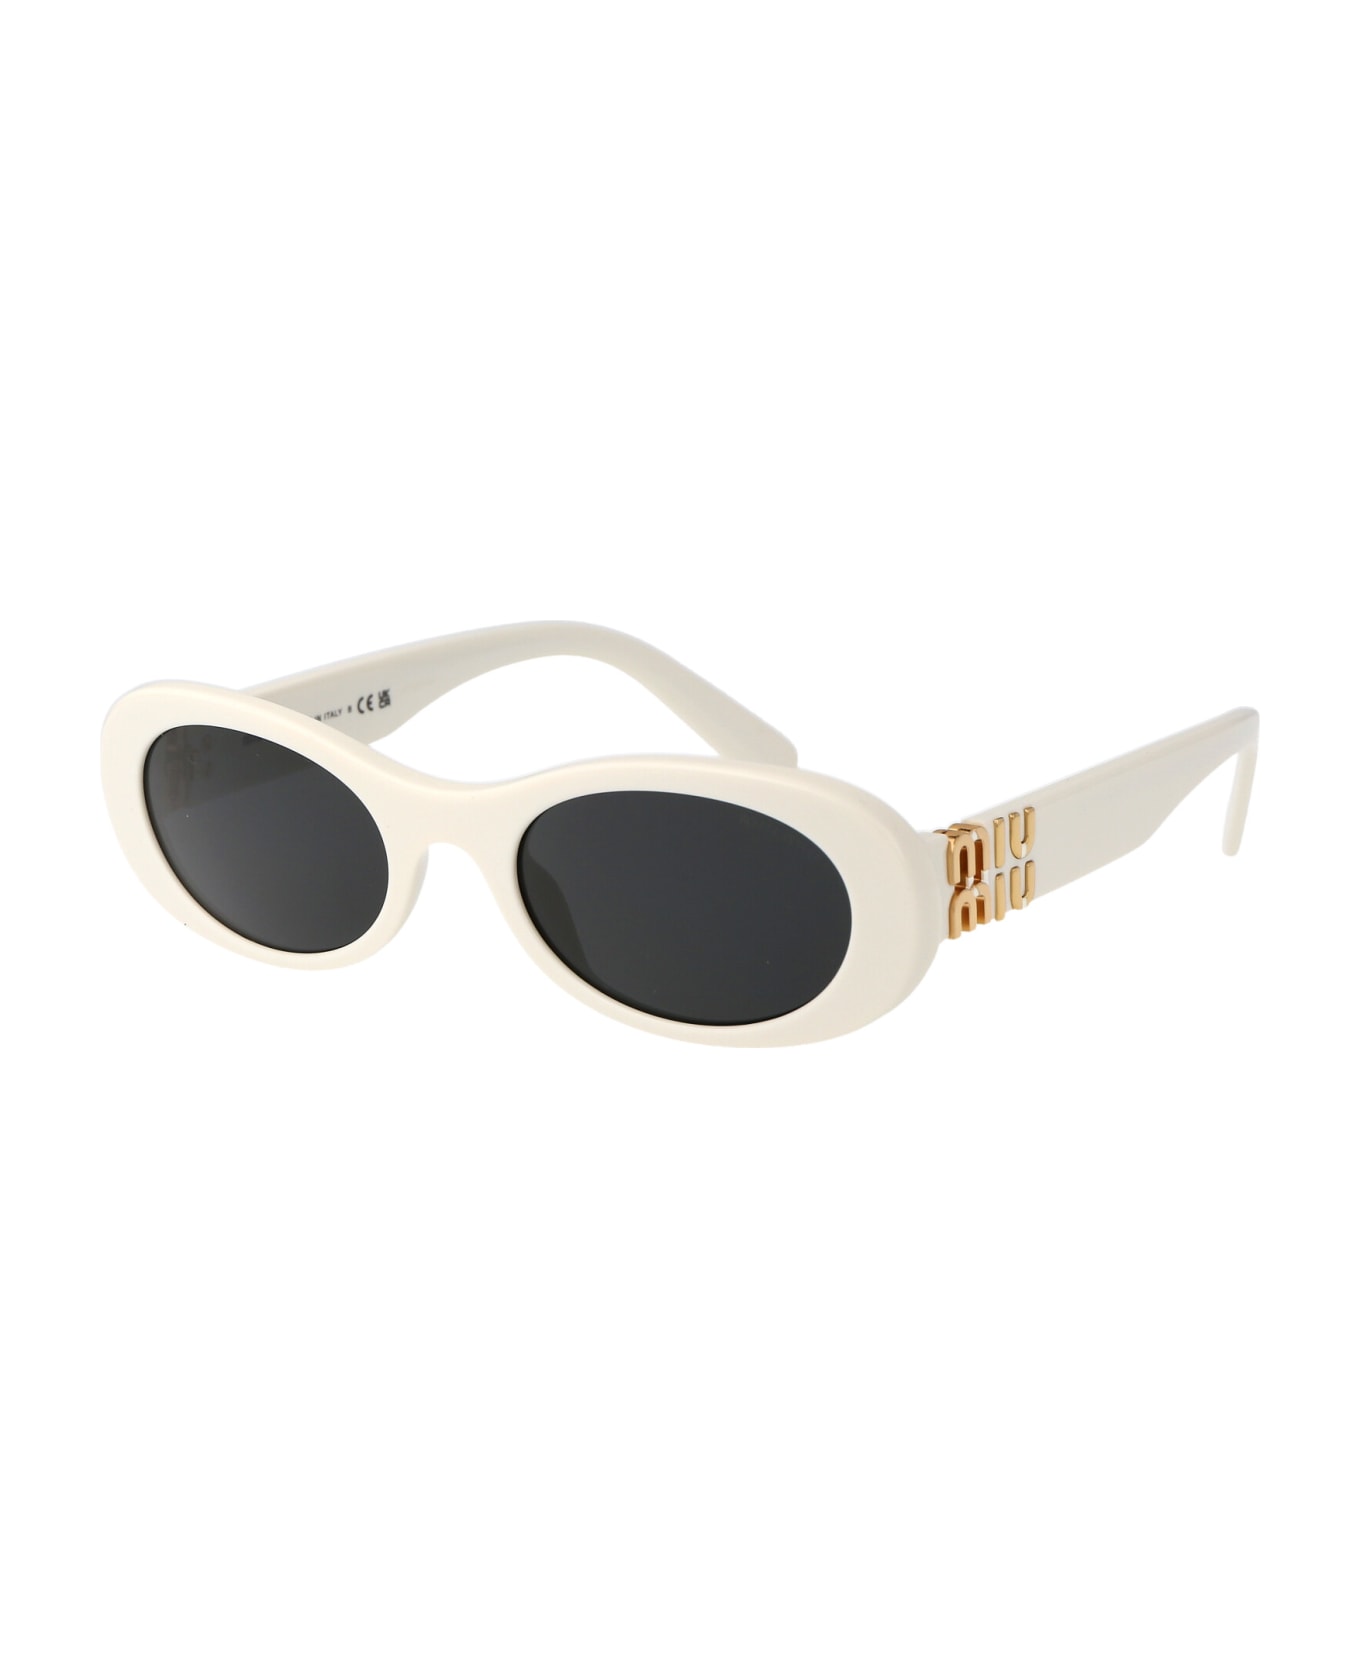 Miu Miu Eyewear 0mu 06zs Sunglasses - 1425S0 White Ivory